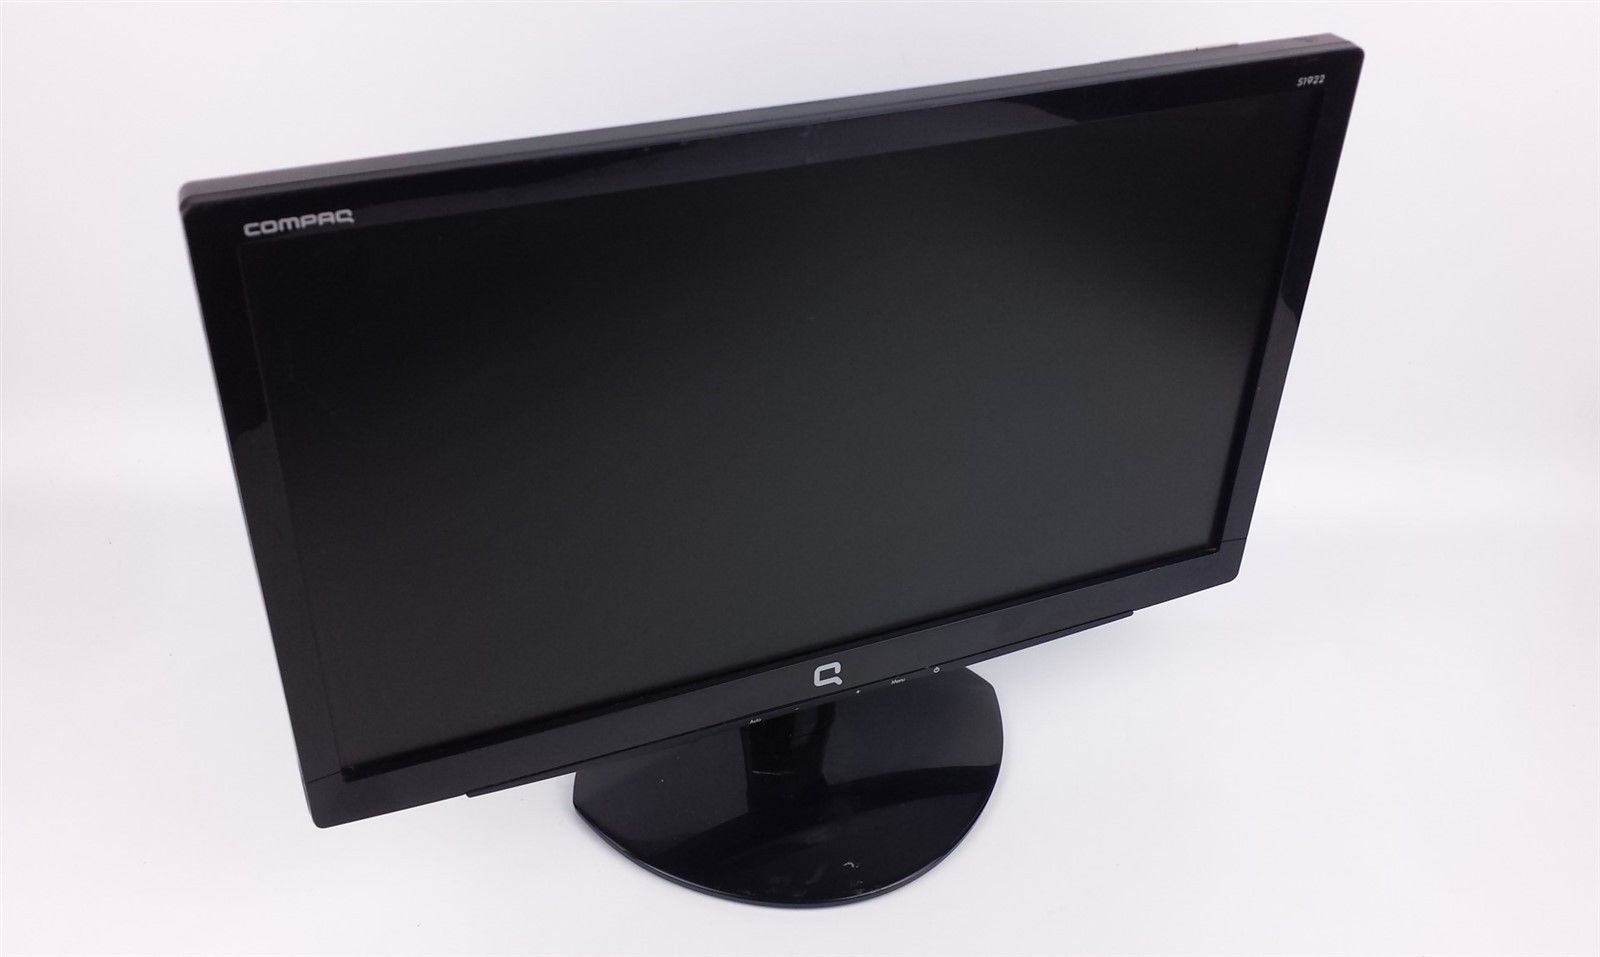 HP Compaq S1922 Widescreen LCD Computer Monitor 18.5" WM766A w/ Power & VGA Cord